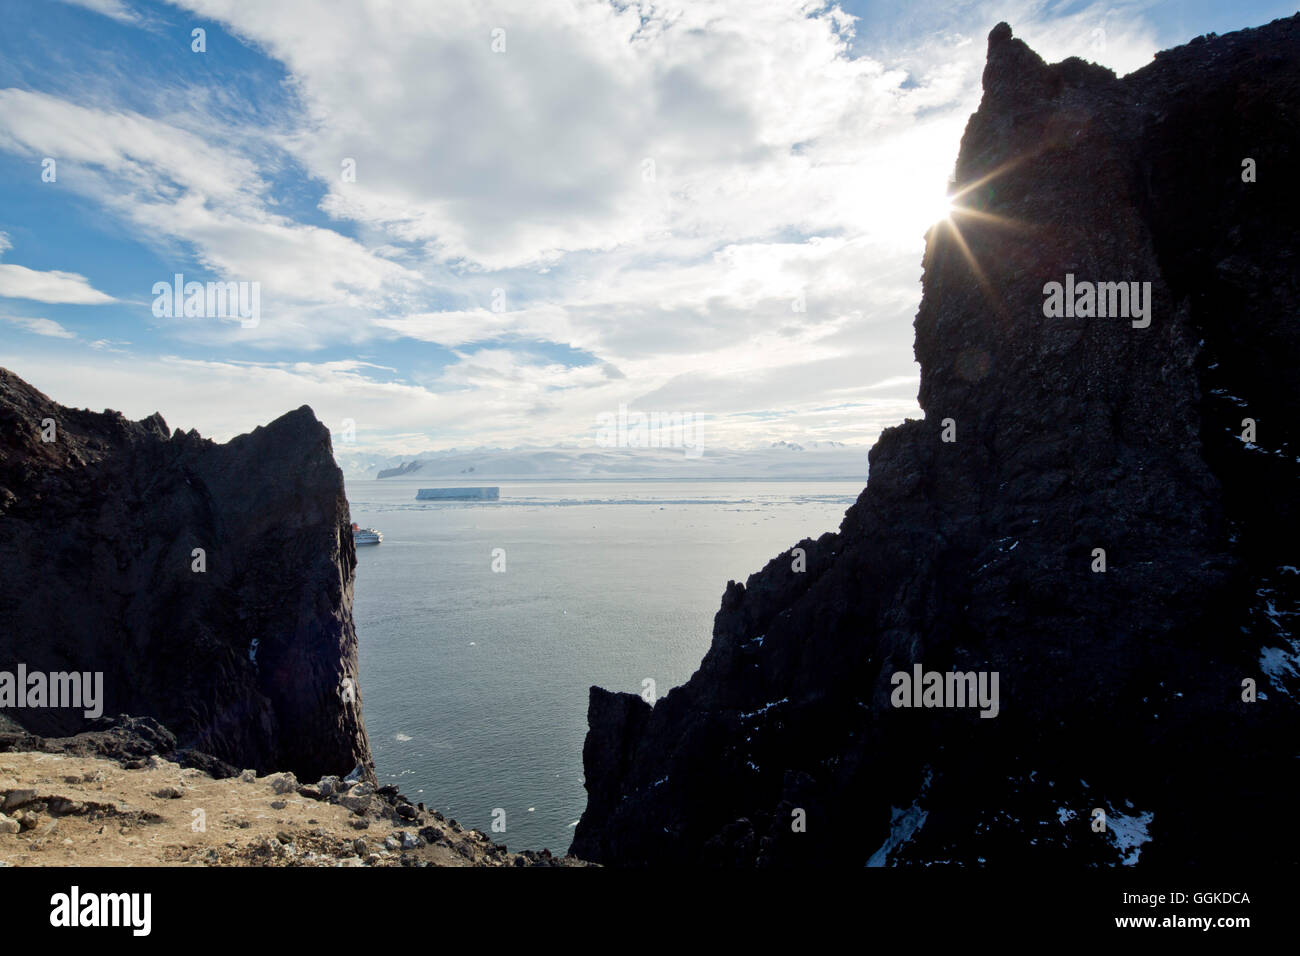 Falaise rocheuse d'origine volcanique avec vue sur la mer, l'île de la possession, de l'Antarctique Banque D'Images